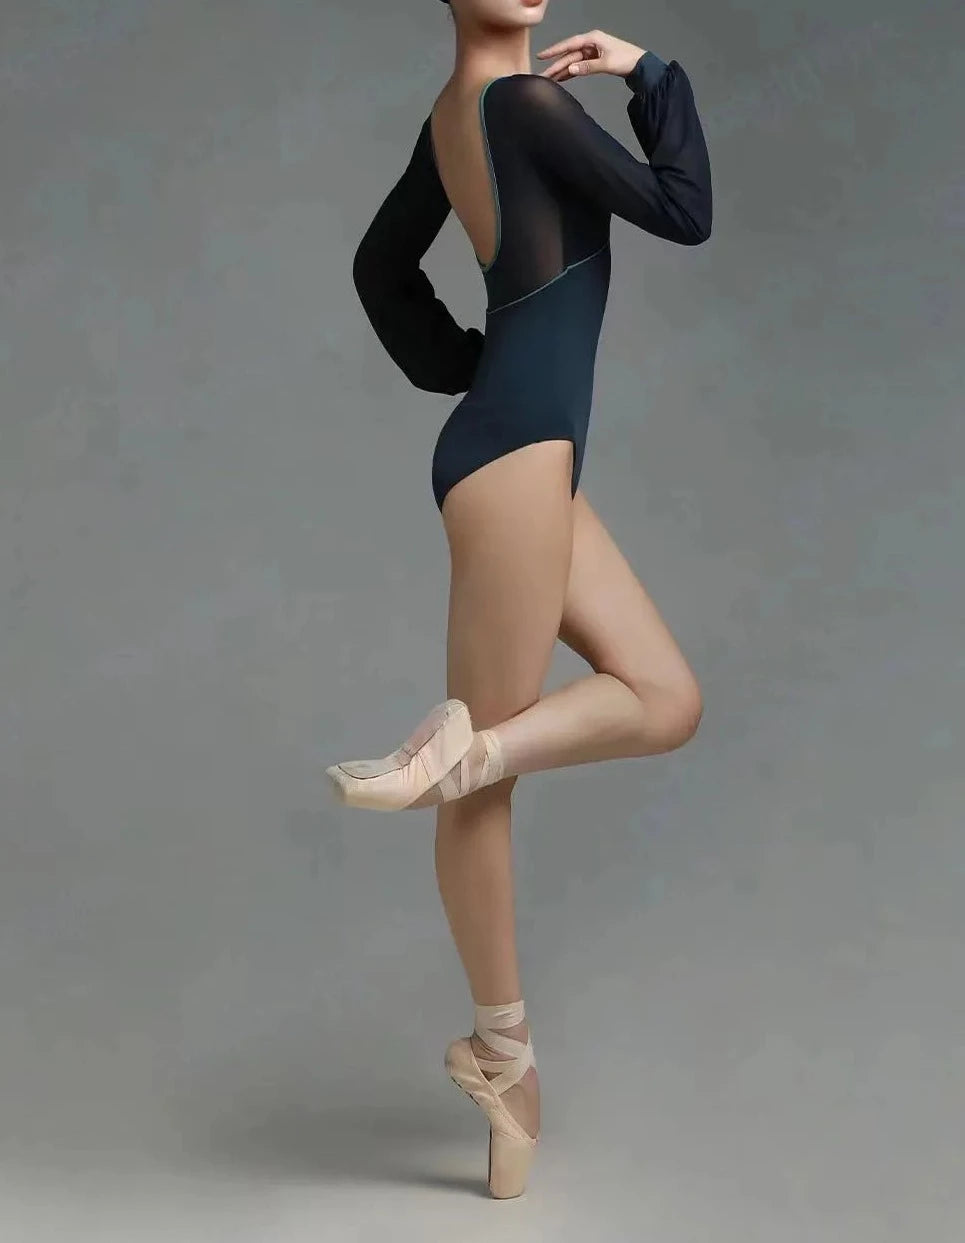 danseuse de ballet portant un justaucorps noir à manches longues